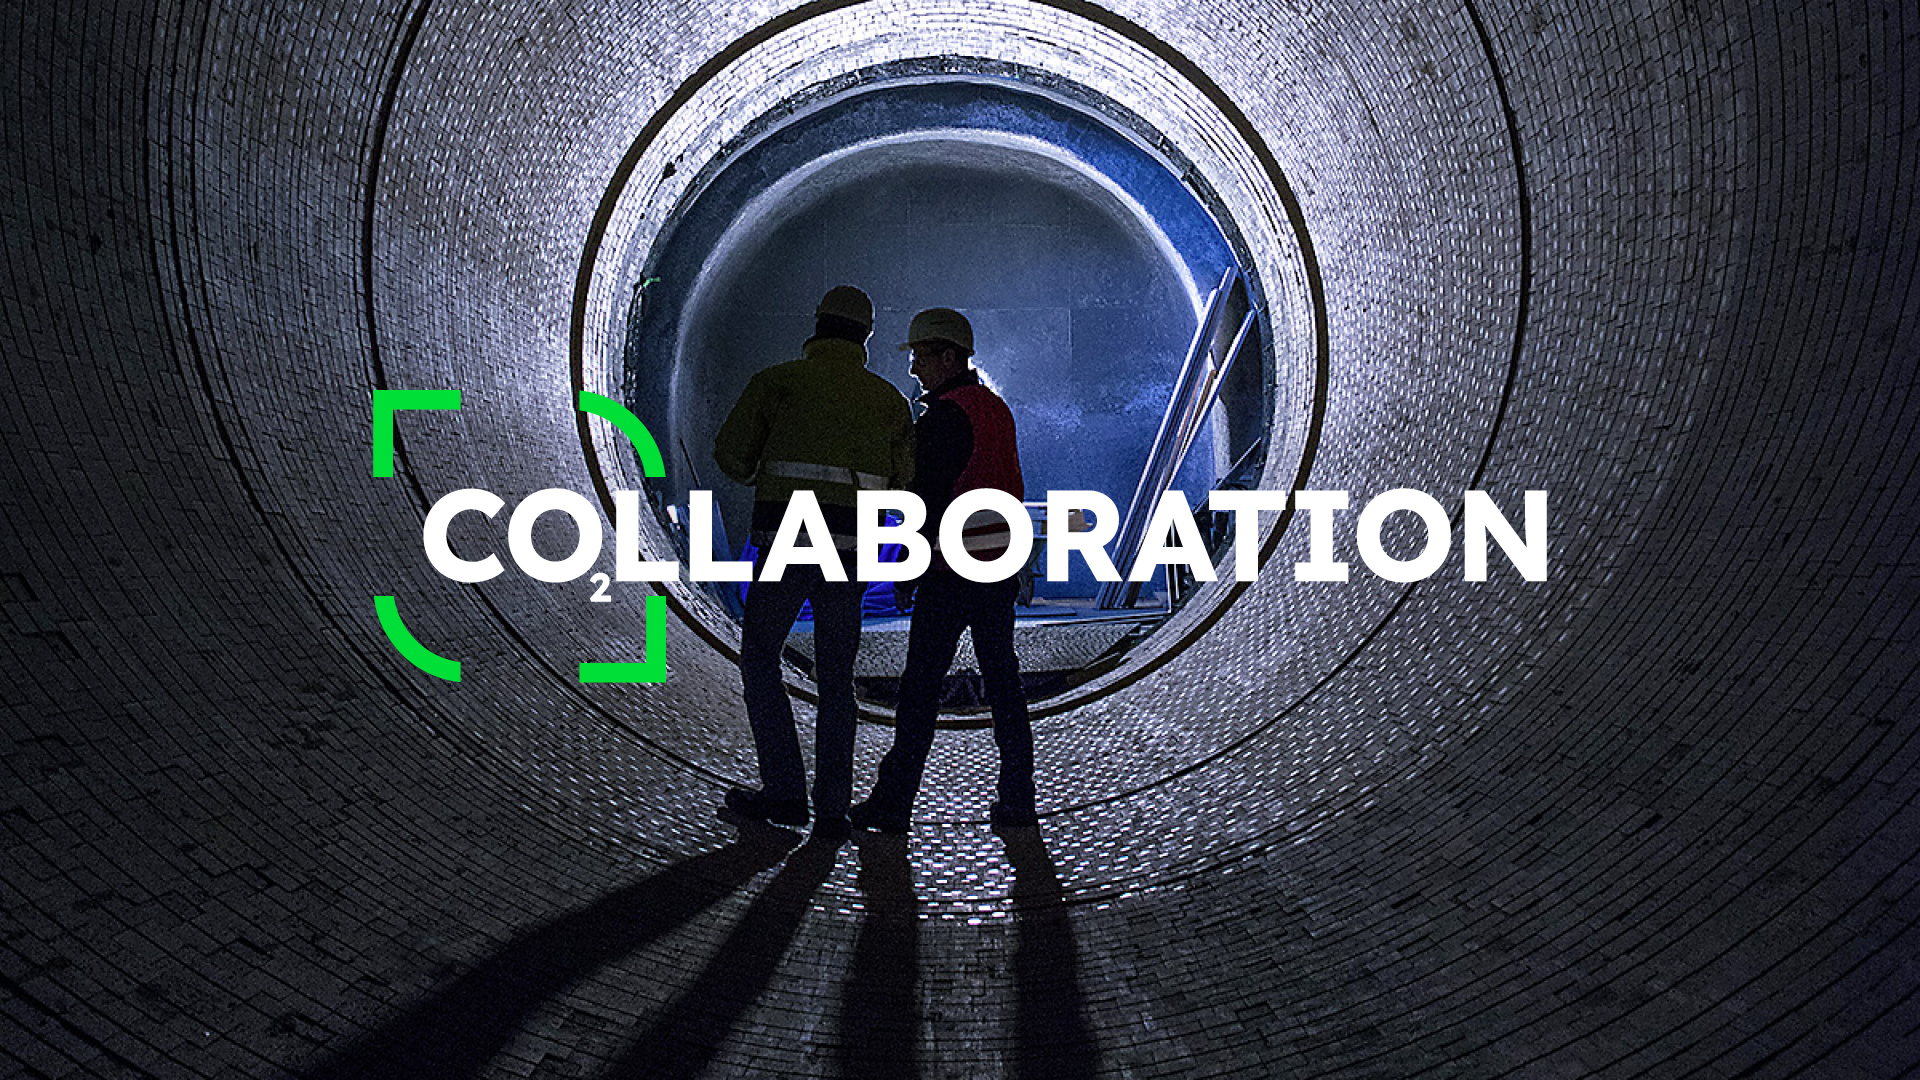 Zwei Männer unterhalten sich in einem Zementofen, darüber steht das Wort "Collaboration", bei dem die Buchstaben CO als CO2 dargestellt werden.